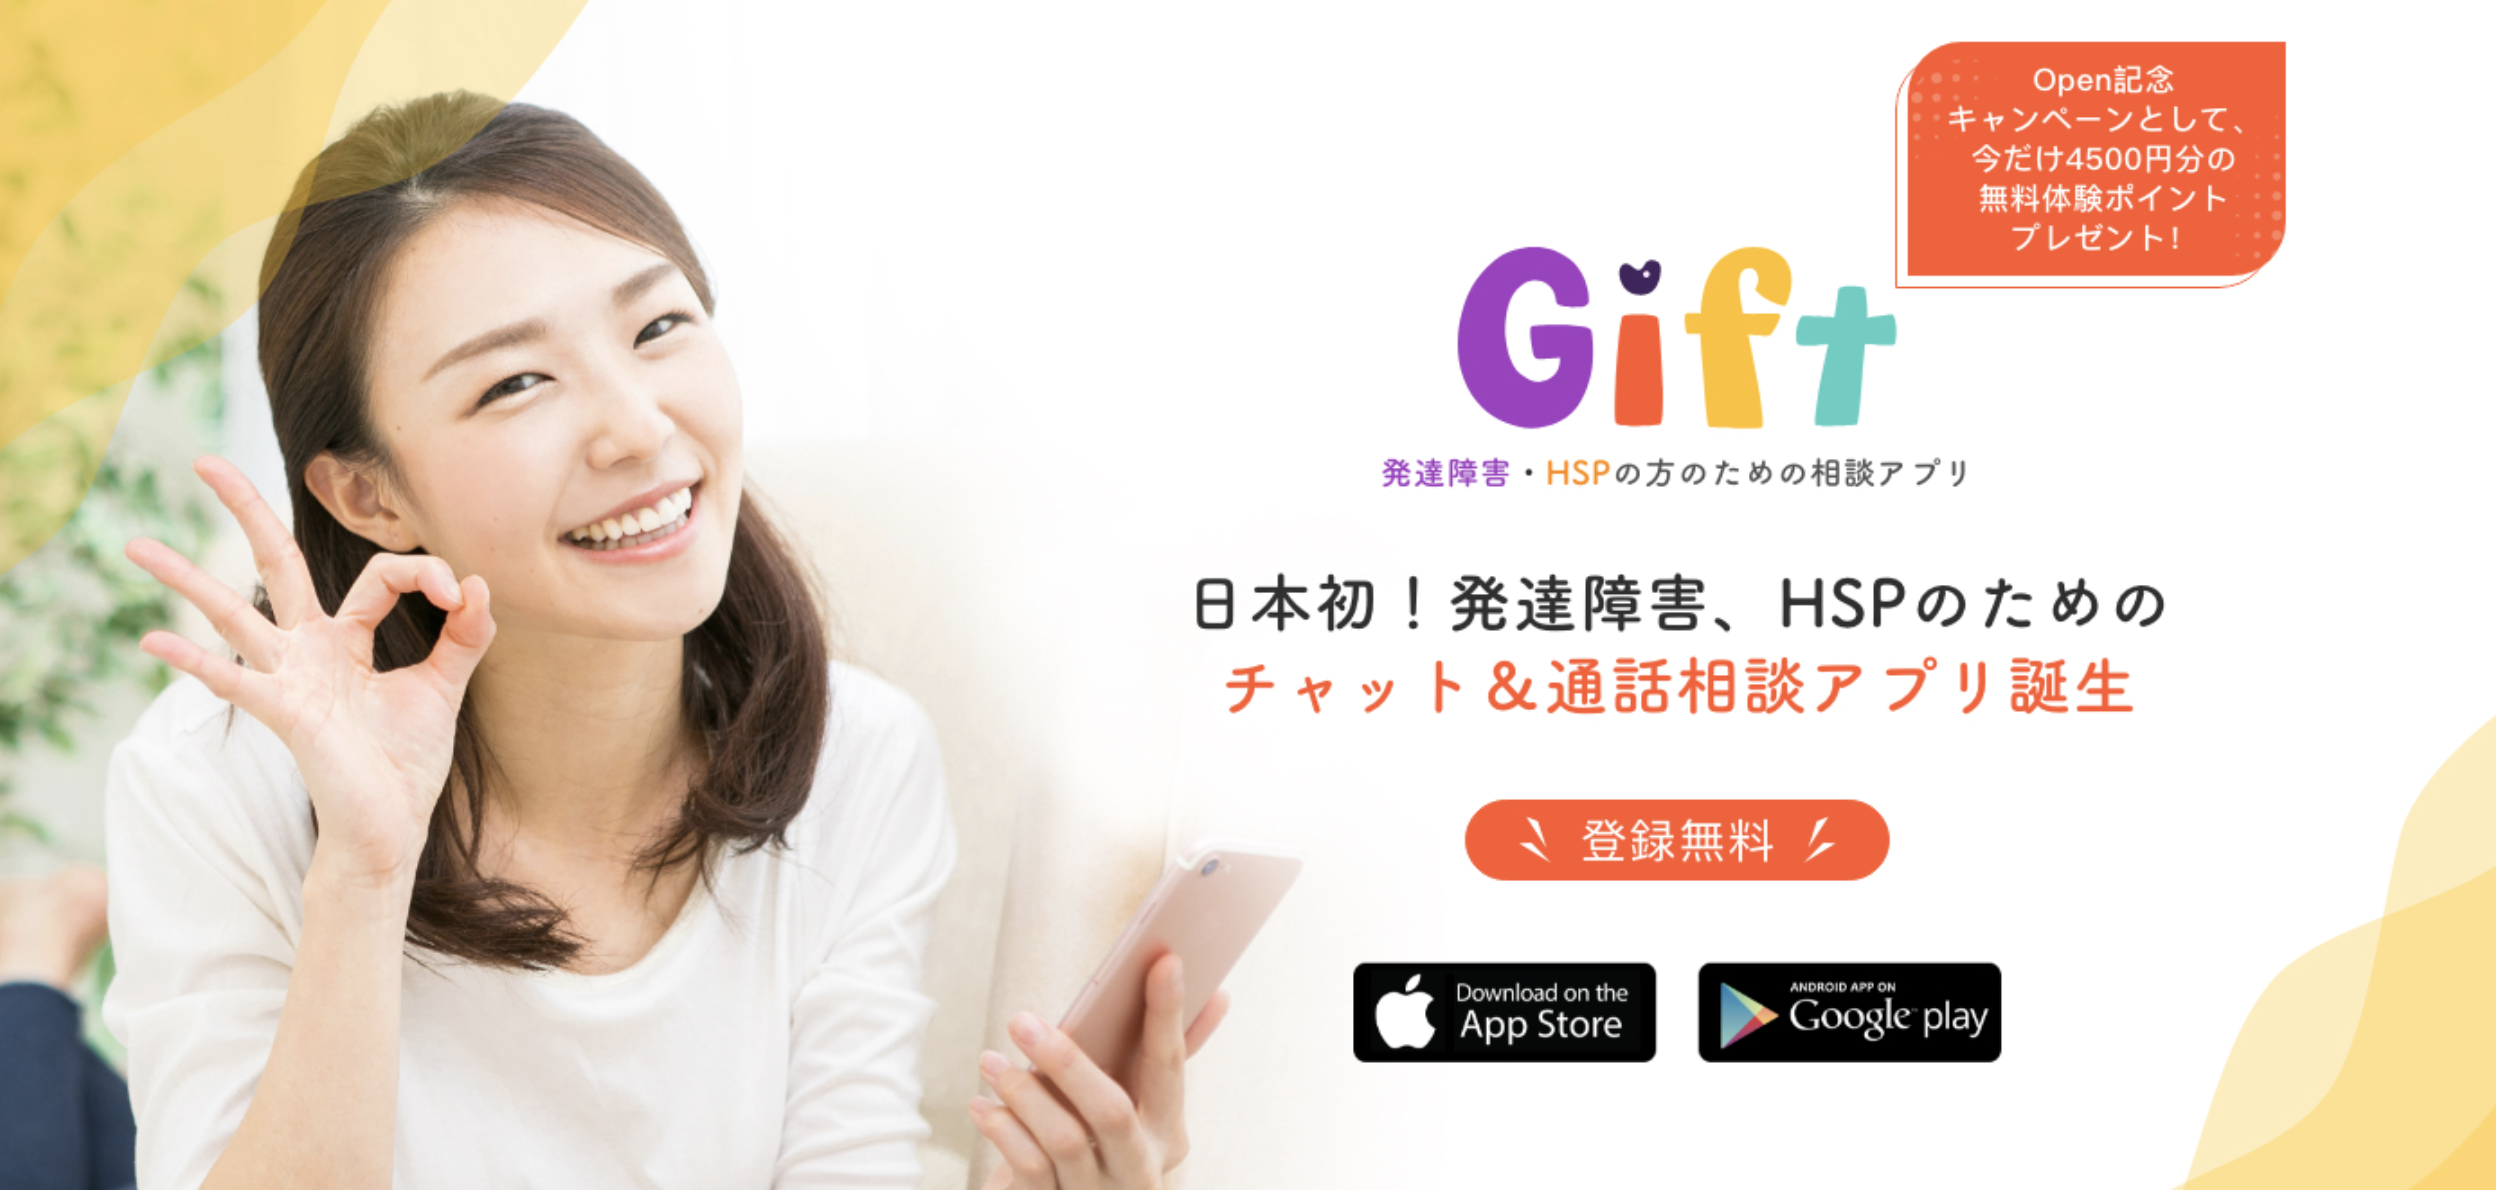 日本初 発達障害 Hspの方のためのチャット 通話相談アプリ Gift が21年2月1日リリース Open記念キャンペーンで最大4500円分の相談ができるポイントプレゼント One Dt株式会社のプレスリリース